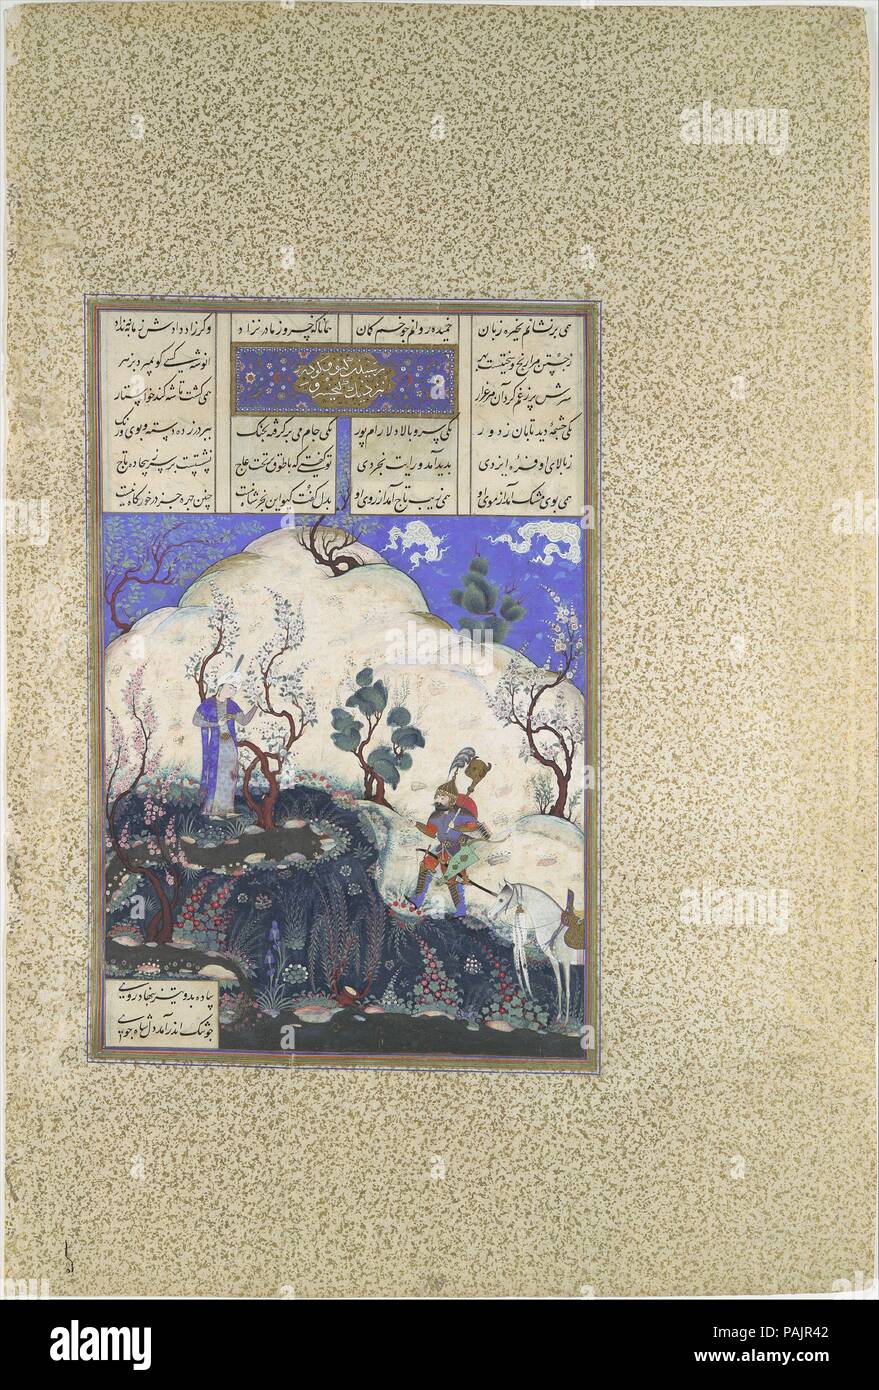 "Kai Khusrau viene scoperto dal GIV', folio 210v dal Shahnama (Libro dei Re) di Shah Tahmasp. Artista: dipinto attribuito a Qadimi (active ca. 1525-65) , e 'Abd al-Vahhab. Autore: Abu'l Qasim Firdausi (935-1020). Dimensioni: Pittura: H. 11 1/8 in. (28,3 cm) W. 7 7/16 in. (18,9 cm) Pagina: H. 18 9/16 in. (47,1 cm) W. 12 1/8 in. (30,8 cm) tappeto: H. 22 a. (55,9 cm) W. 16 a. (40,6 cm). Data: ca. 1525-30. Dopo sette anni di ricerca per il futuro shah, la persistente cavaliere iraniano Giv finalmente scoperto il principe Kai Khusrau. Fedele alla storia, la pittura offre un idilliaco s Foto Stock